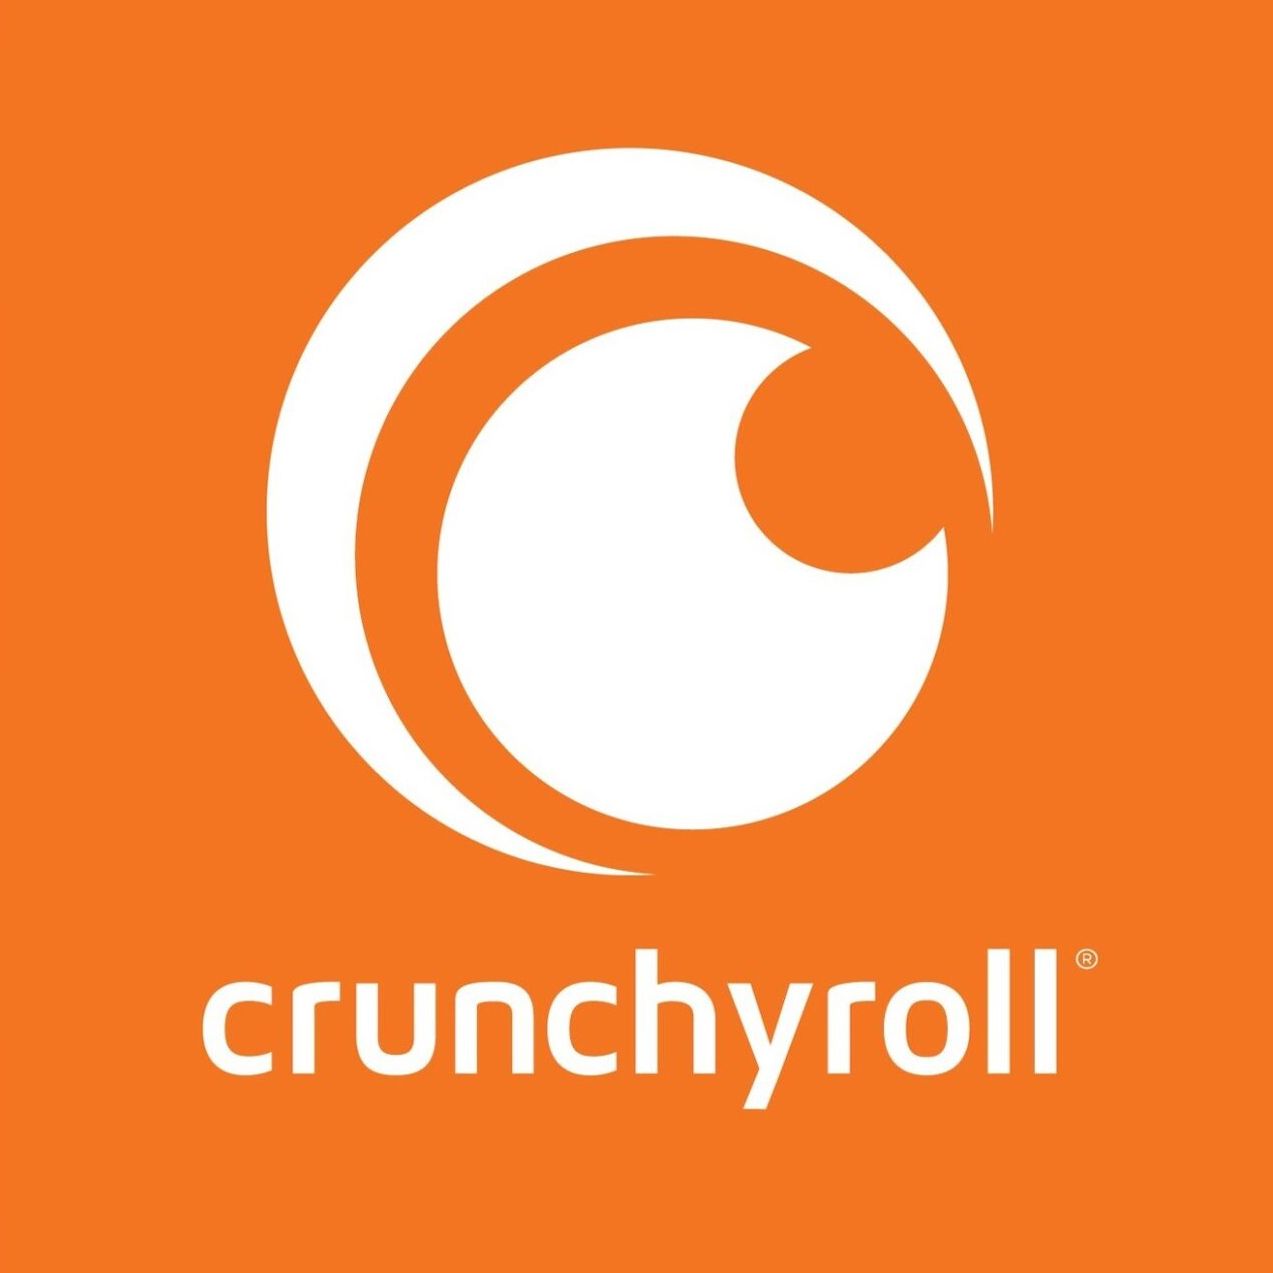 crunchyroll_logo